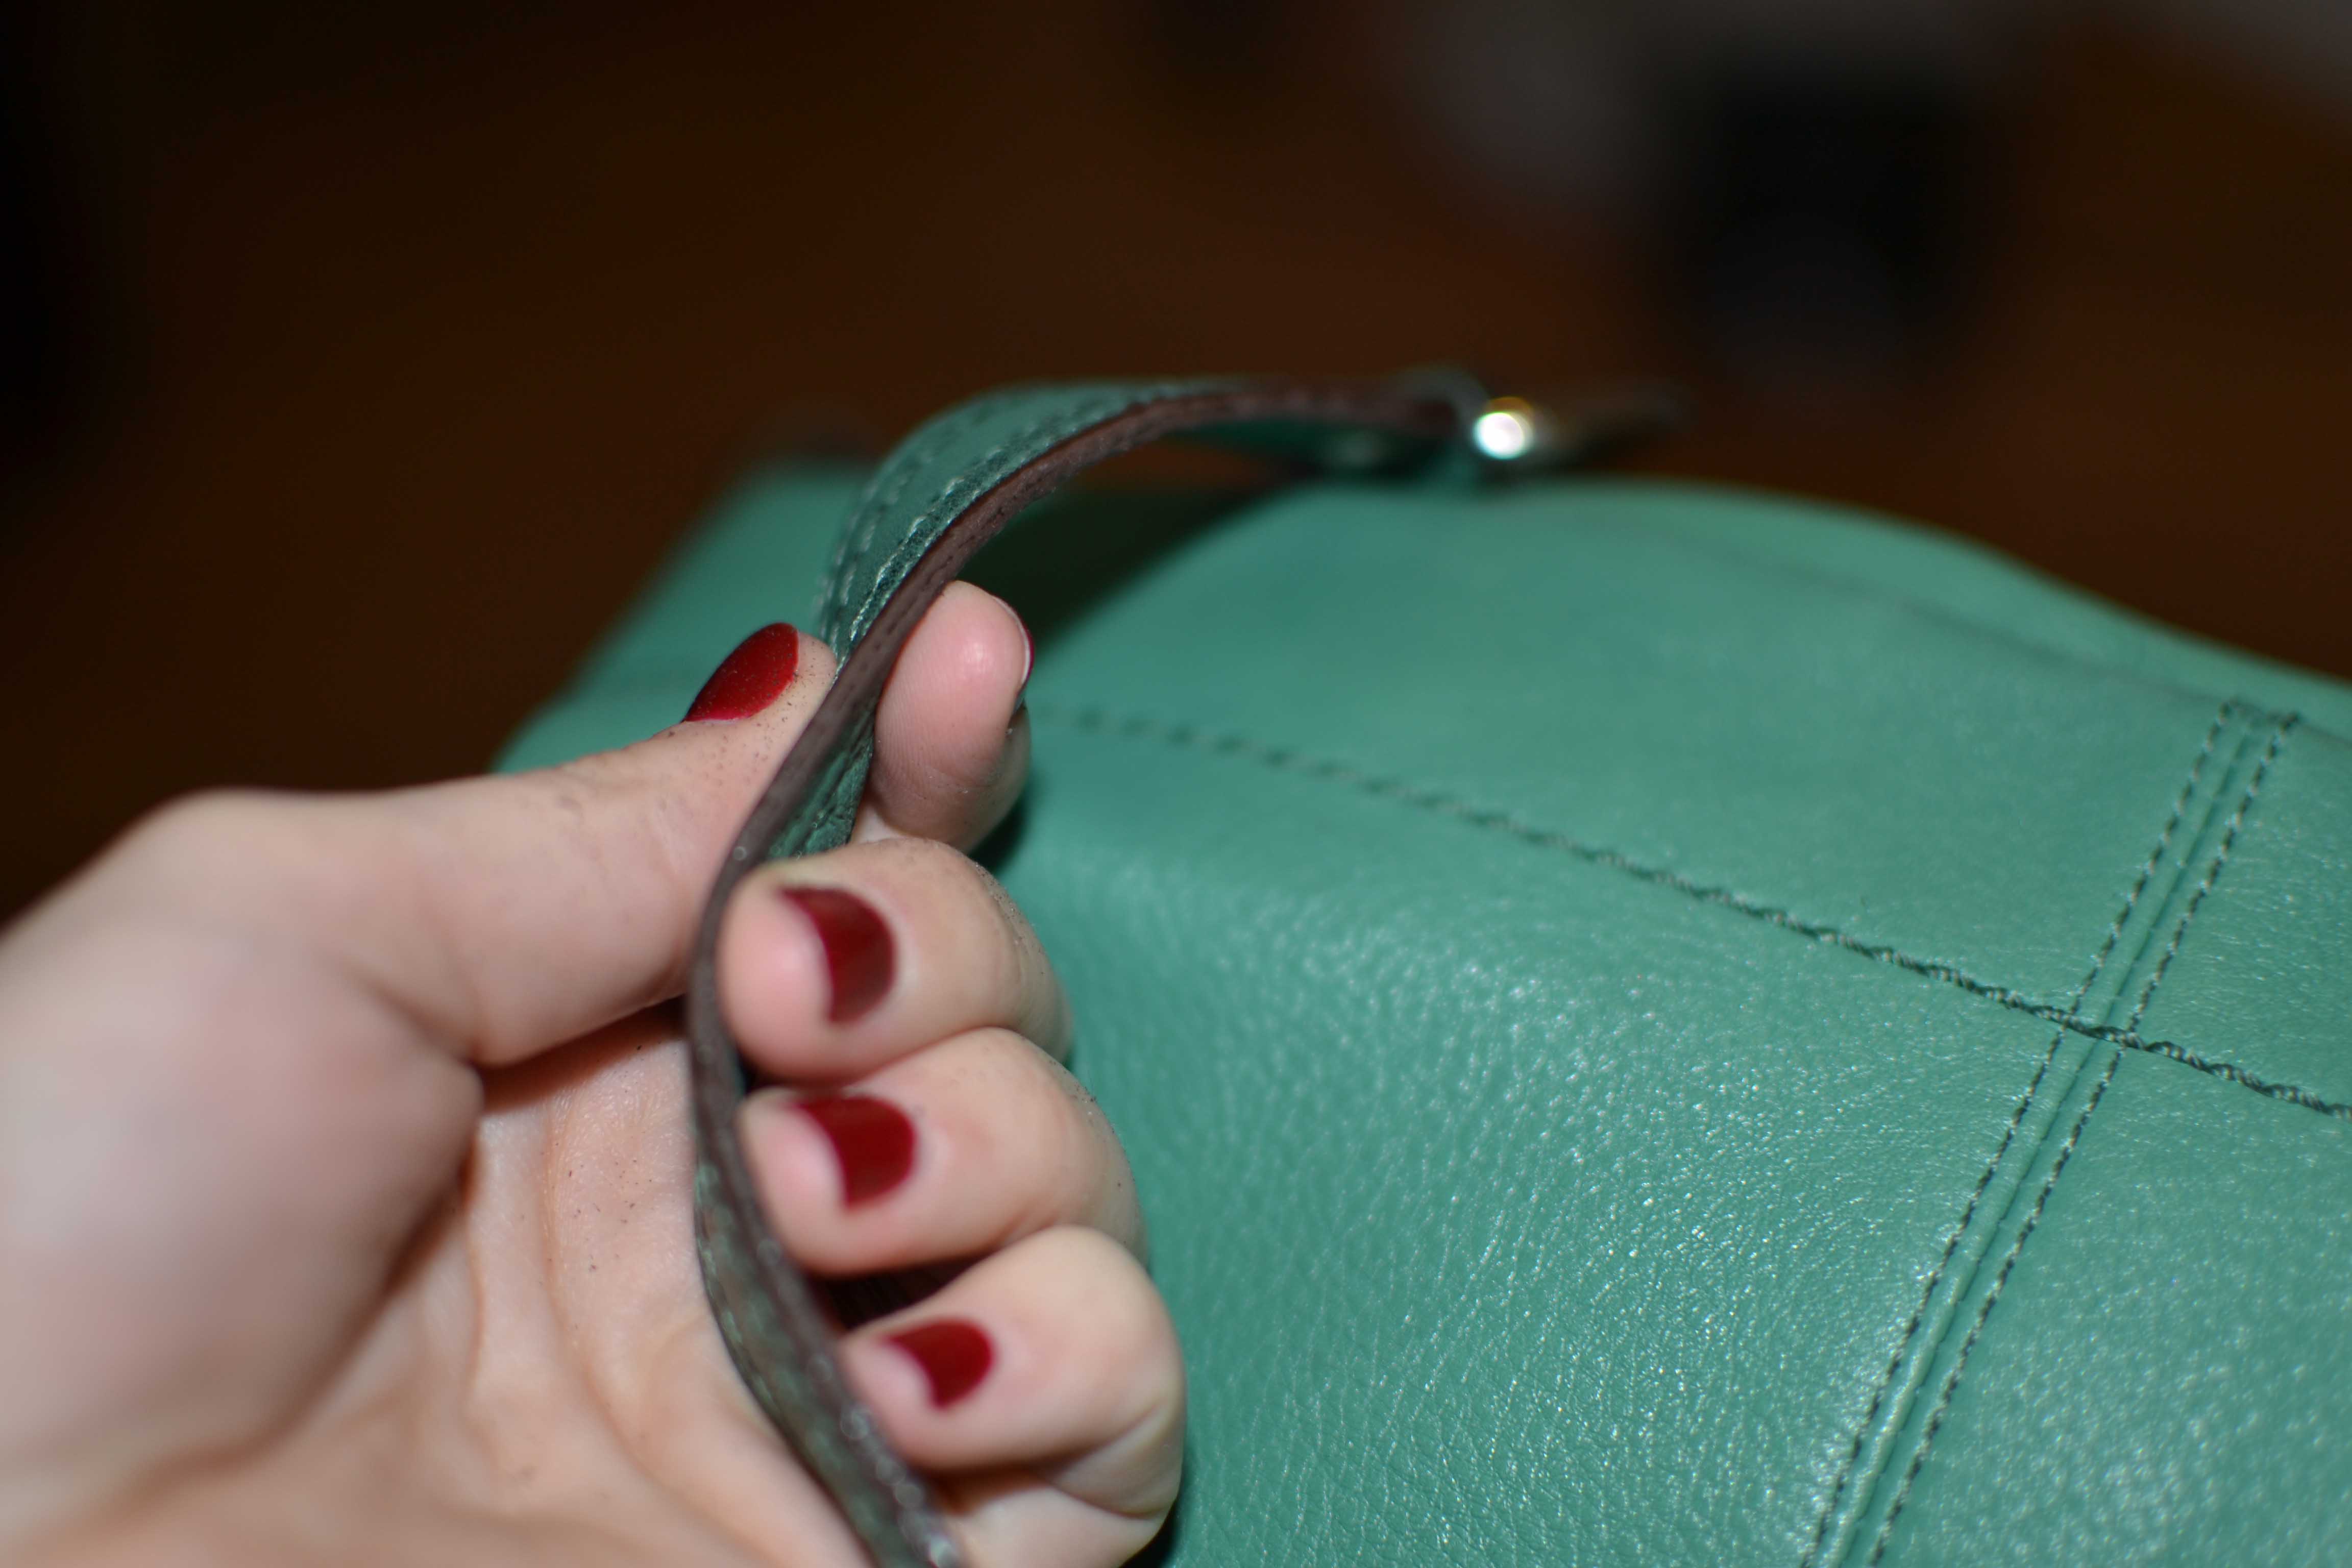 DKNY handbag – strap repair – The Shoe Carers